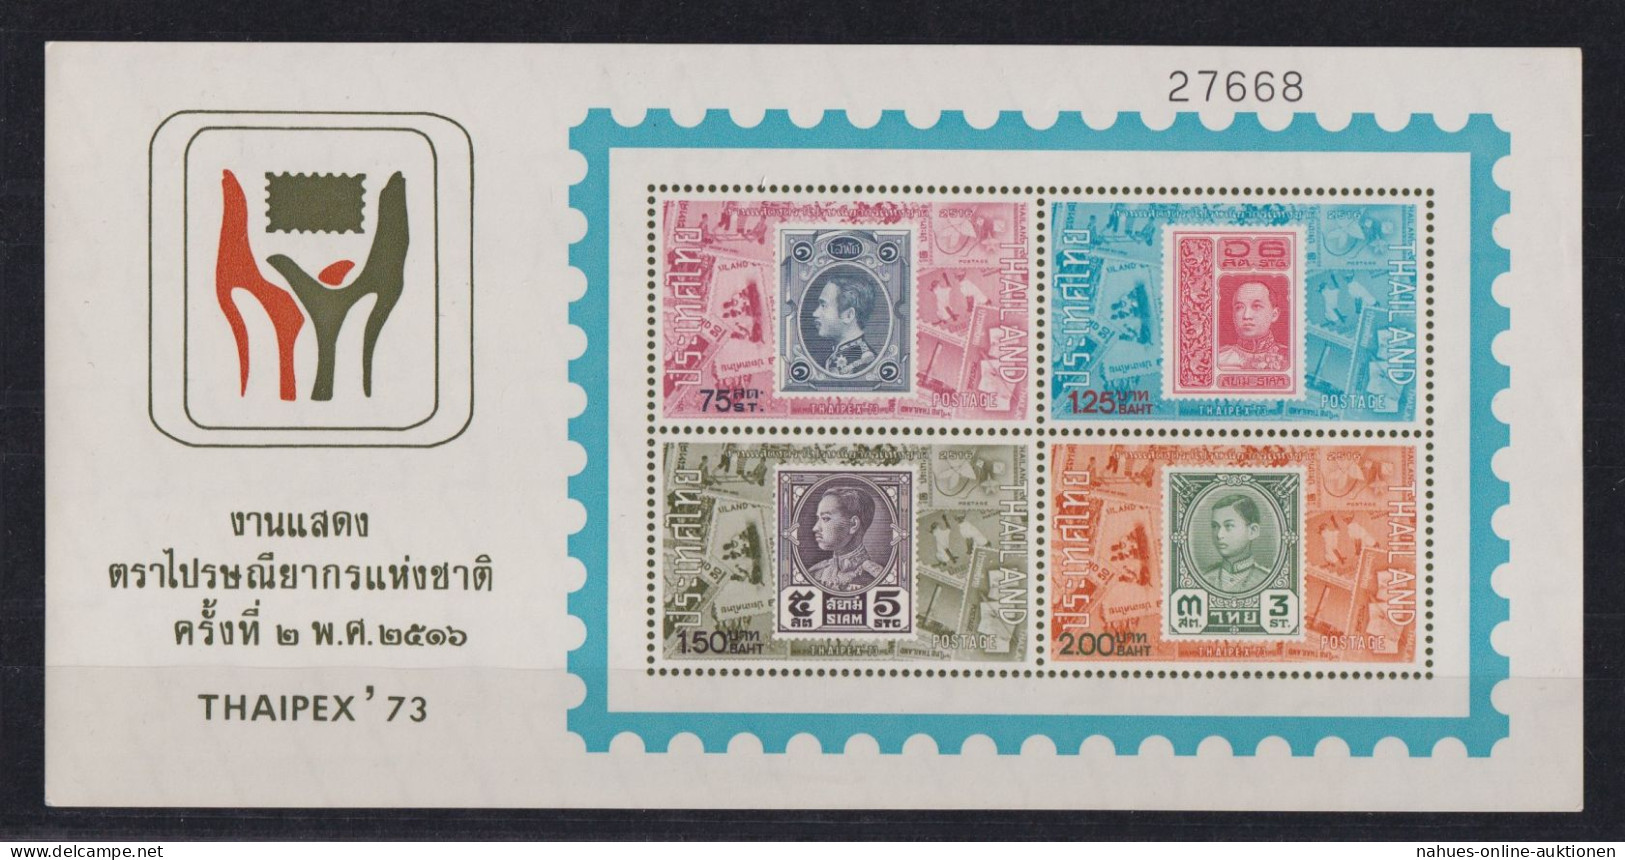 Thailand Block 2 Philatelie Thaipex 73 Briefmarken Ausstellung Luxus Postfrisch - Thailand